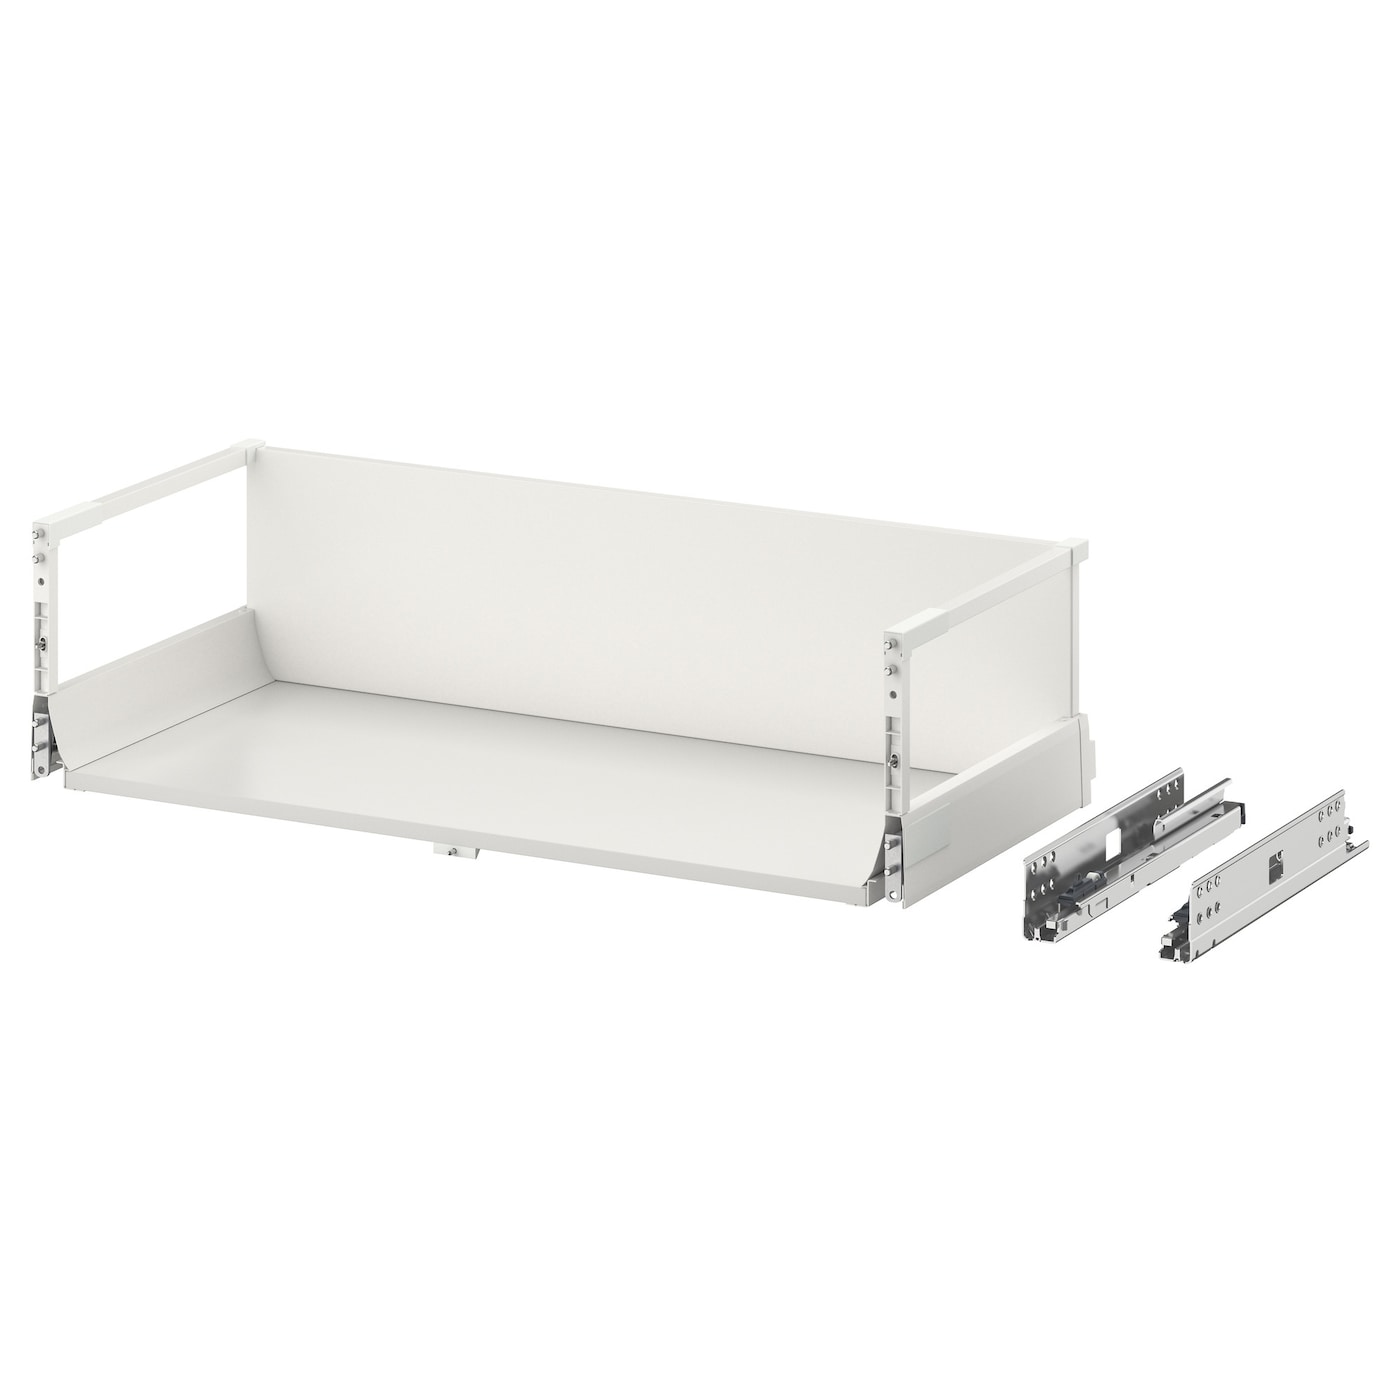 Ящик высокий - MAXIMERA IKEA/ МАКСИМЕРА ИКЕА, 76,4х21,2 см, белый